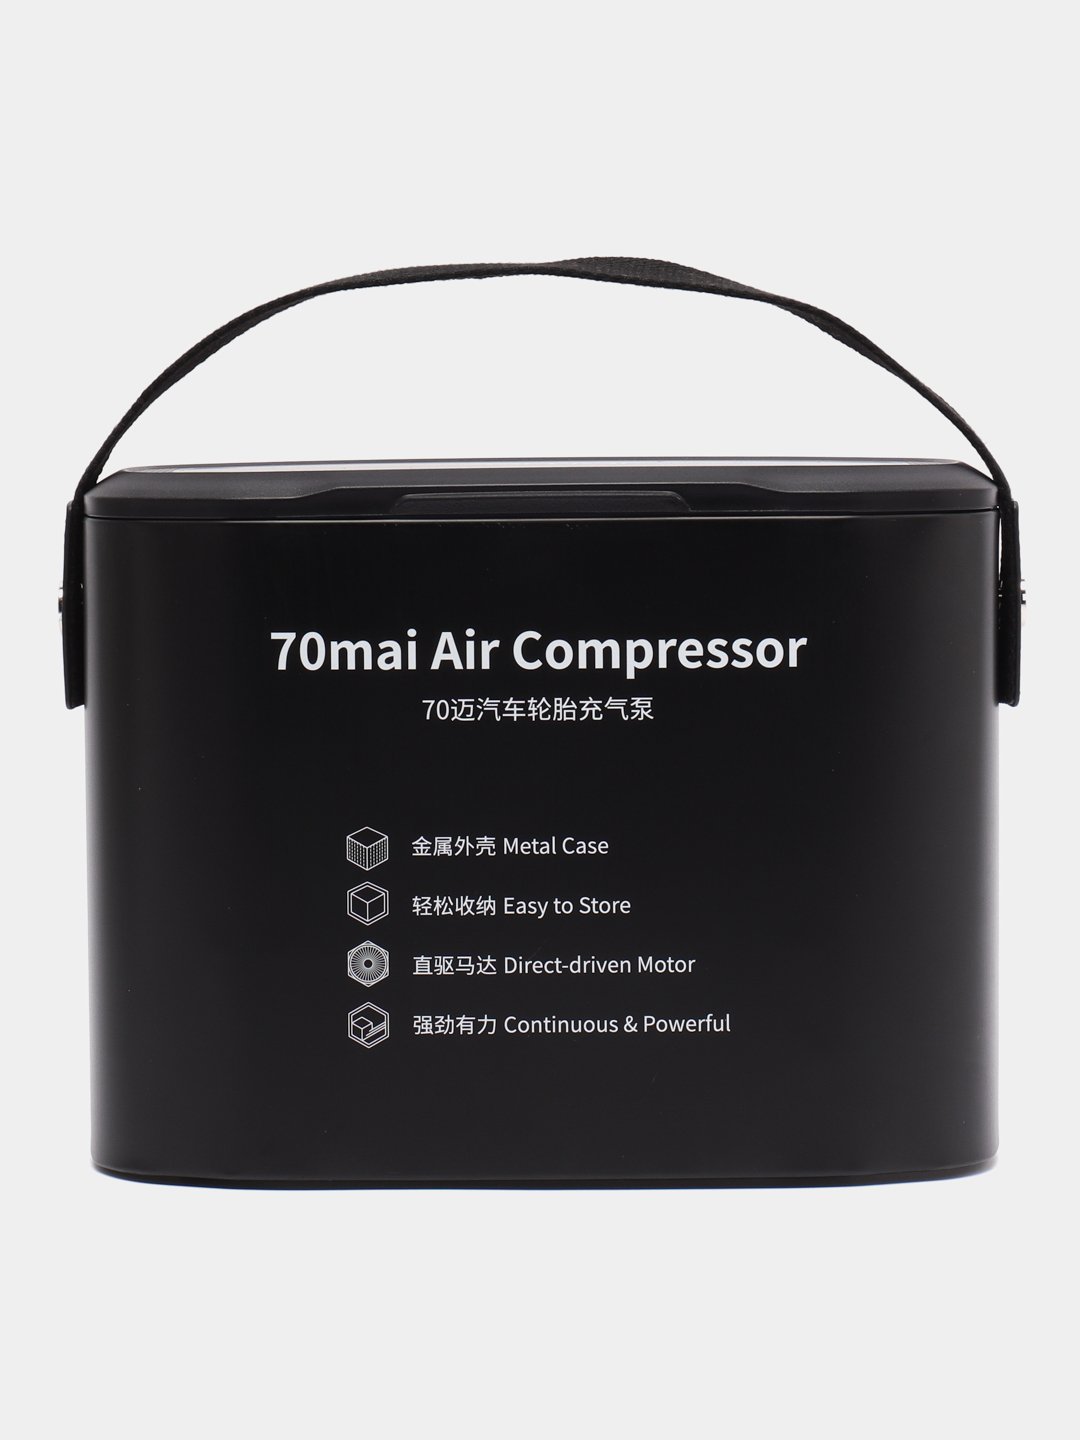 Компрессор автомобильный 70mai air compressor midrive tp01. Xiaomi 70mai Air Compressor MIDRIVE tp01eu. Компрессор Ксиаоми.